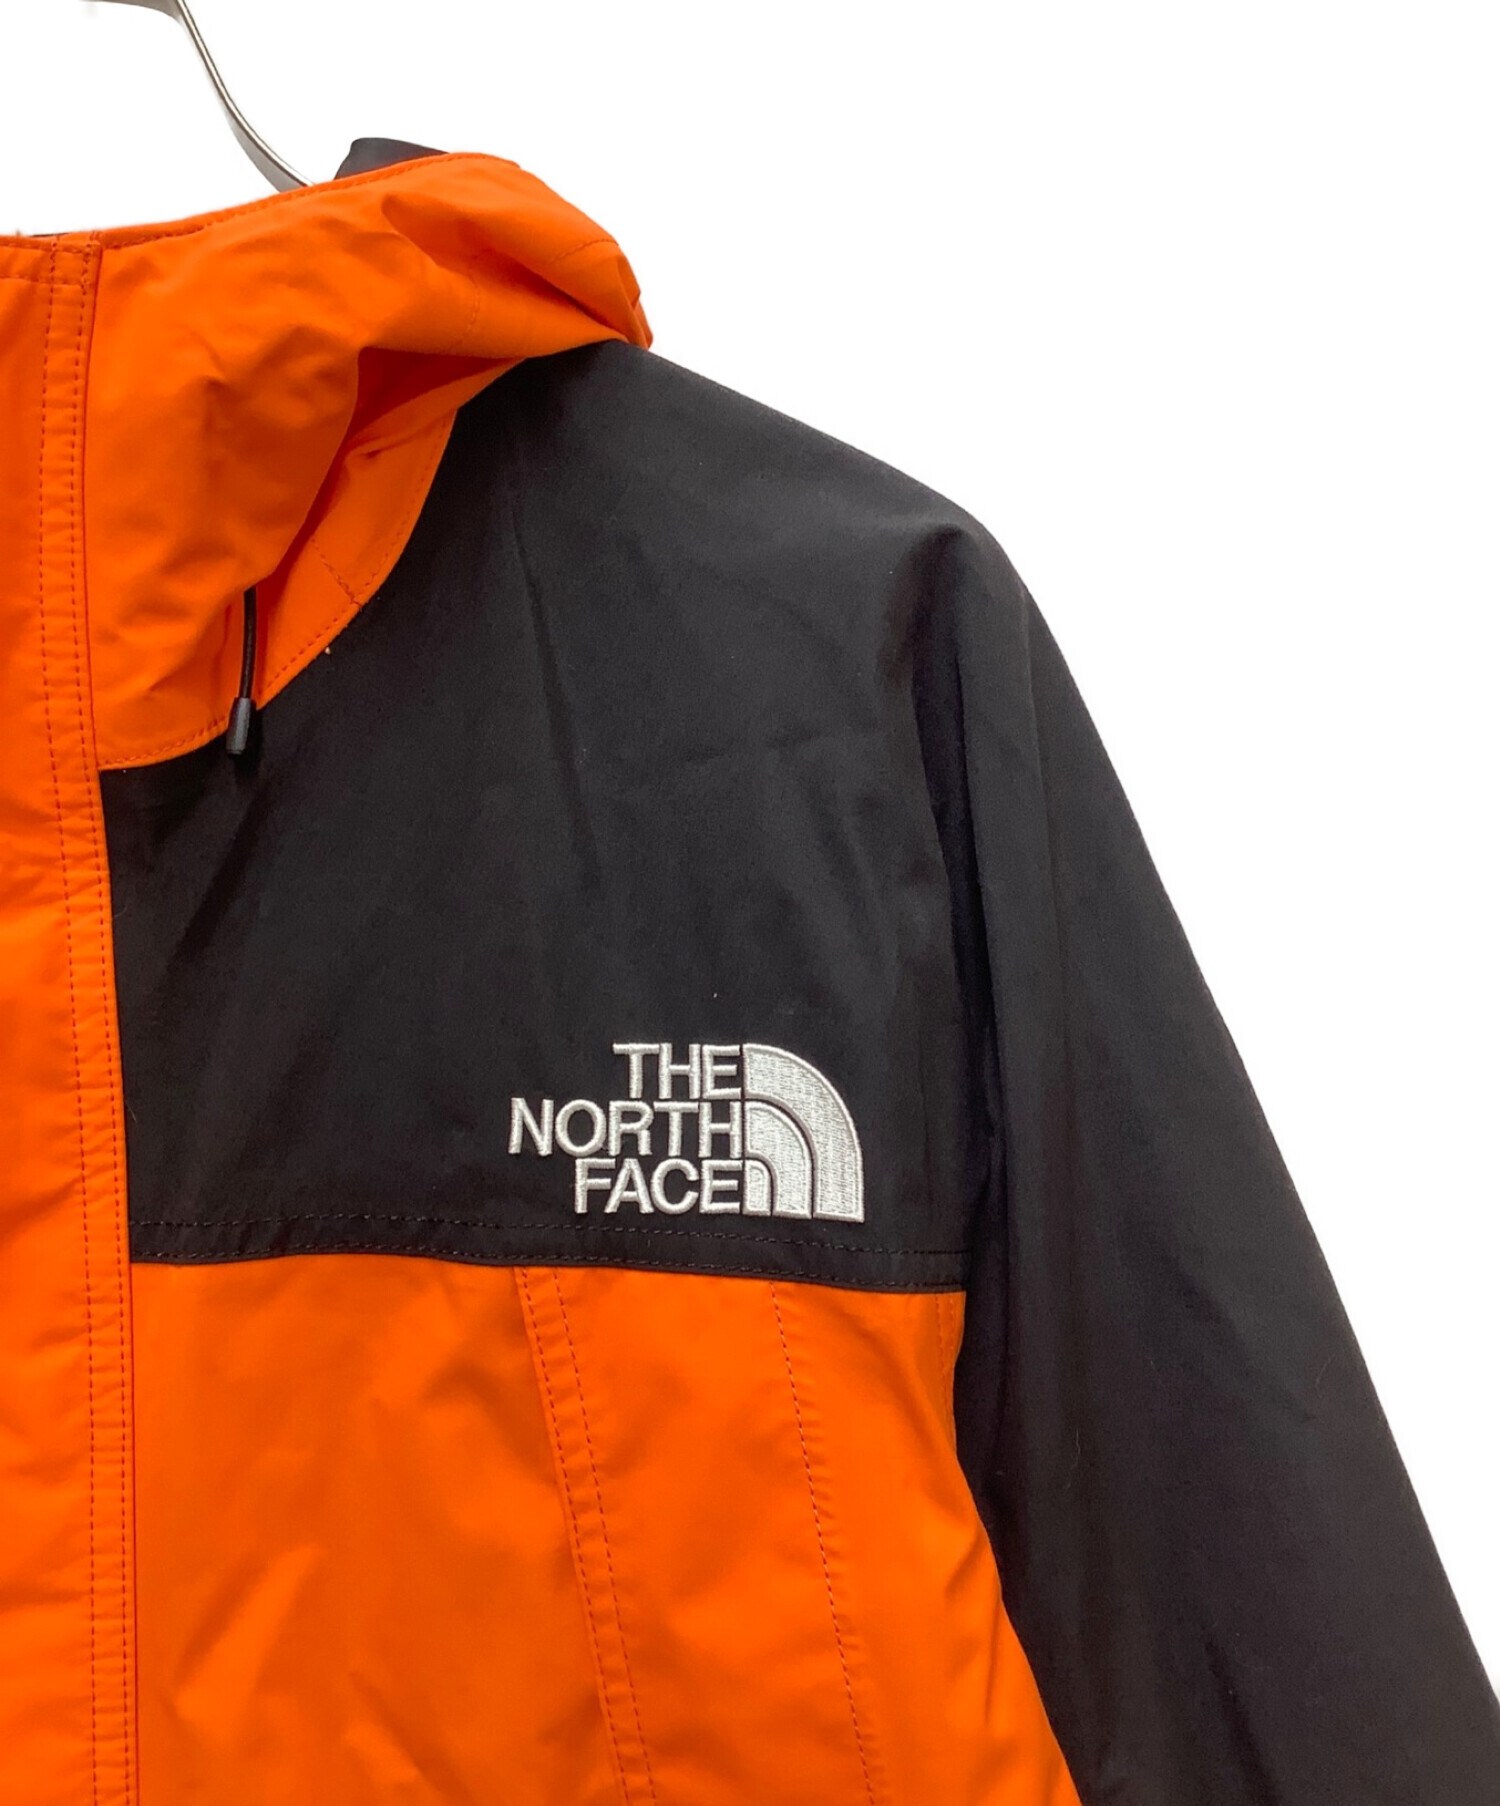 THE NORTH FACE (ザ ノース フェイス) マウンテンパーカー オレンジ×ブラック サイズ:L